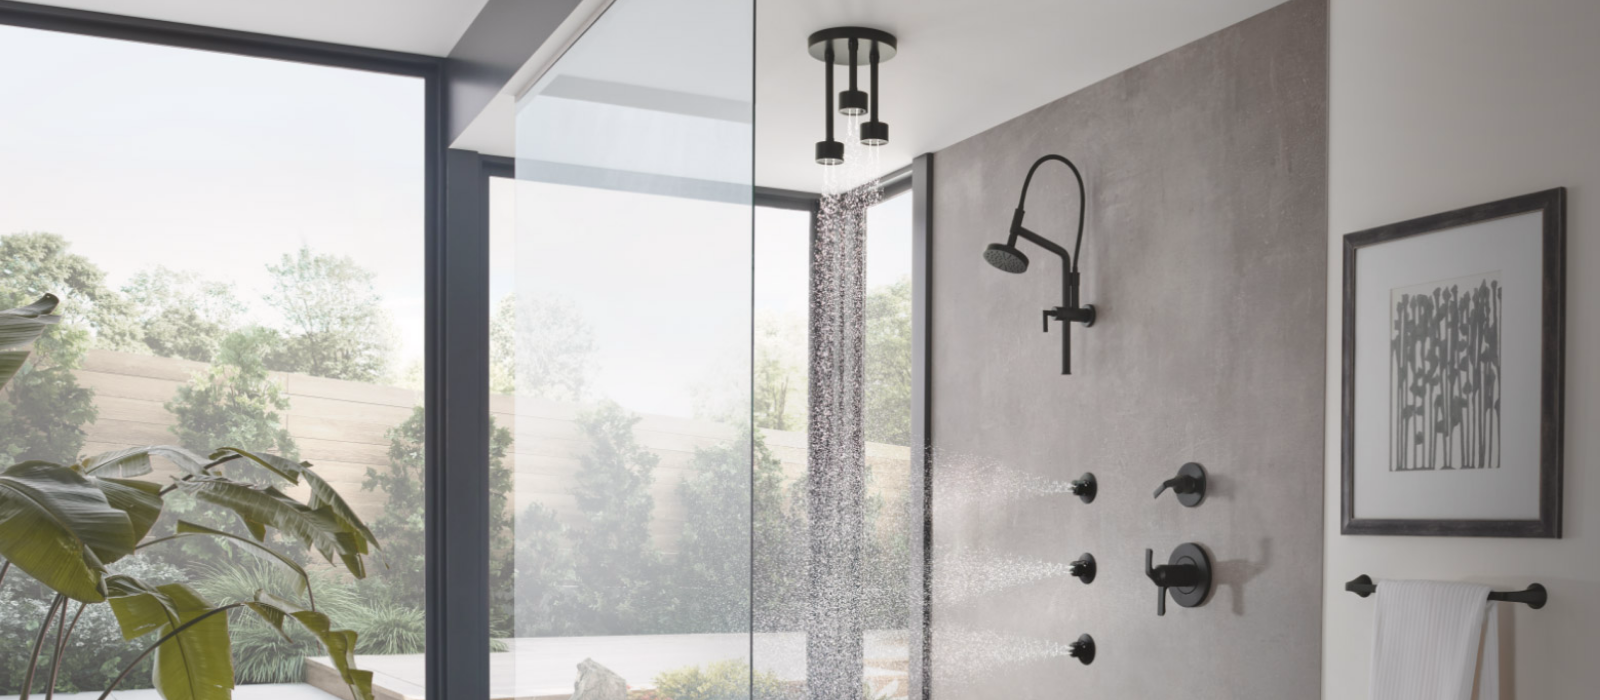 Shower Design Gallery
